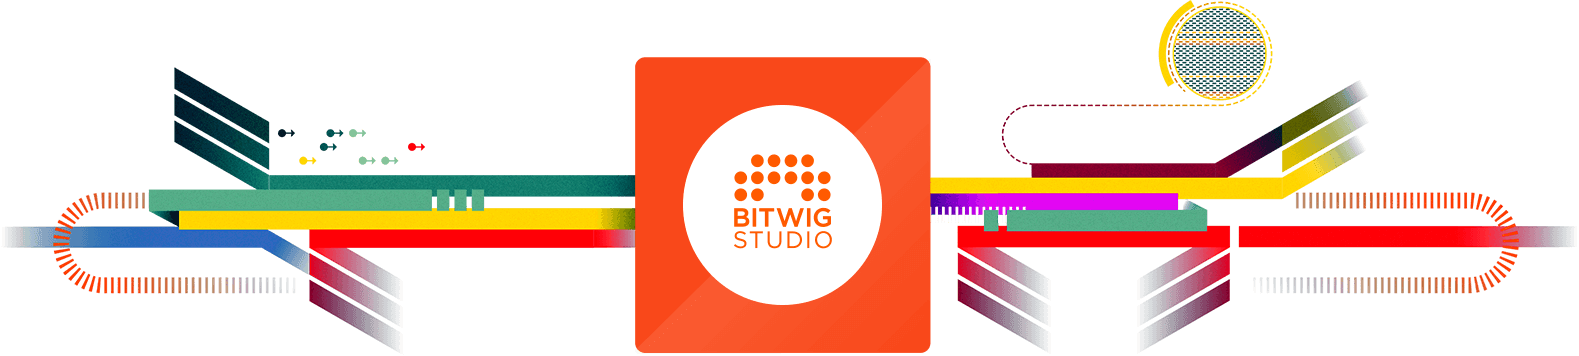 Bitwig Studio Overview Banner